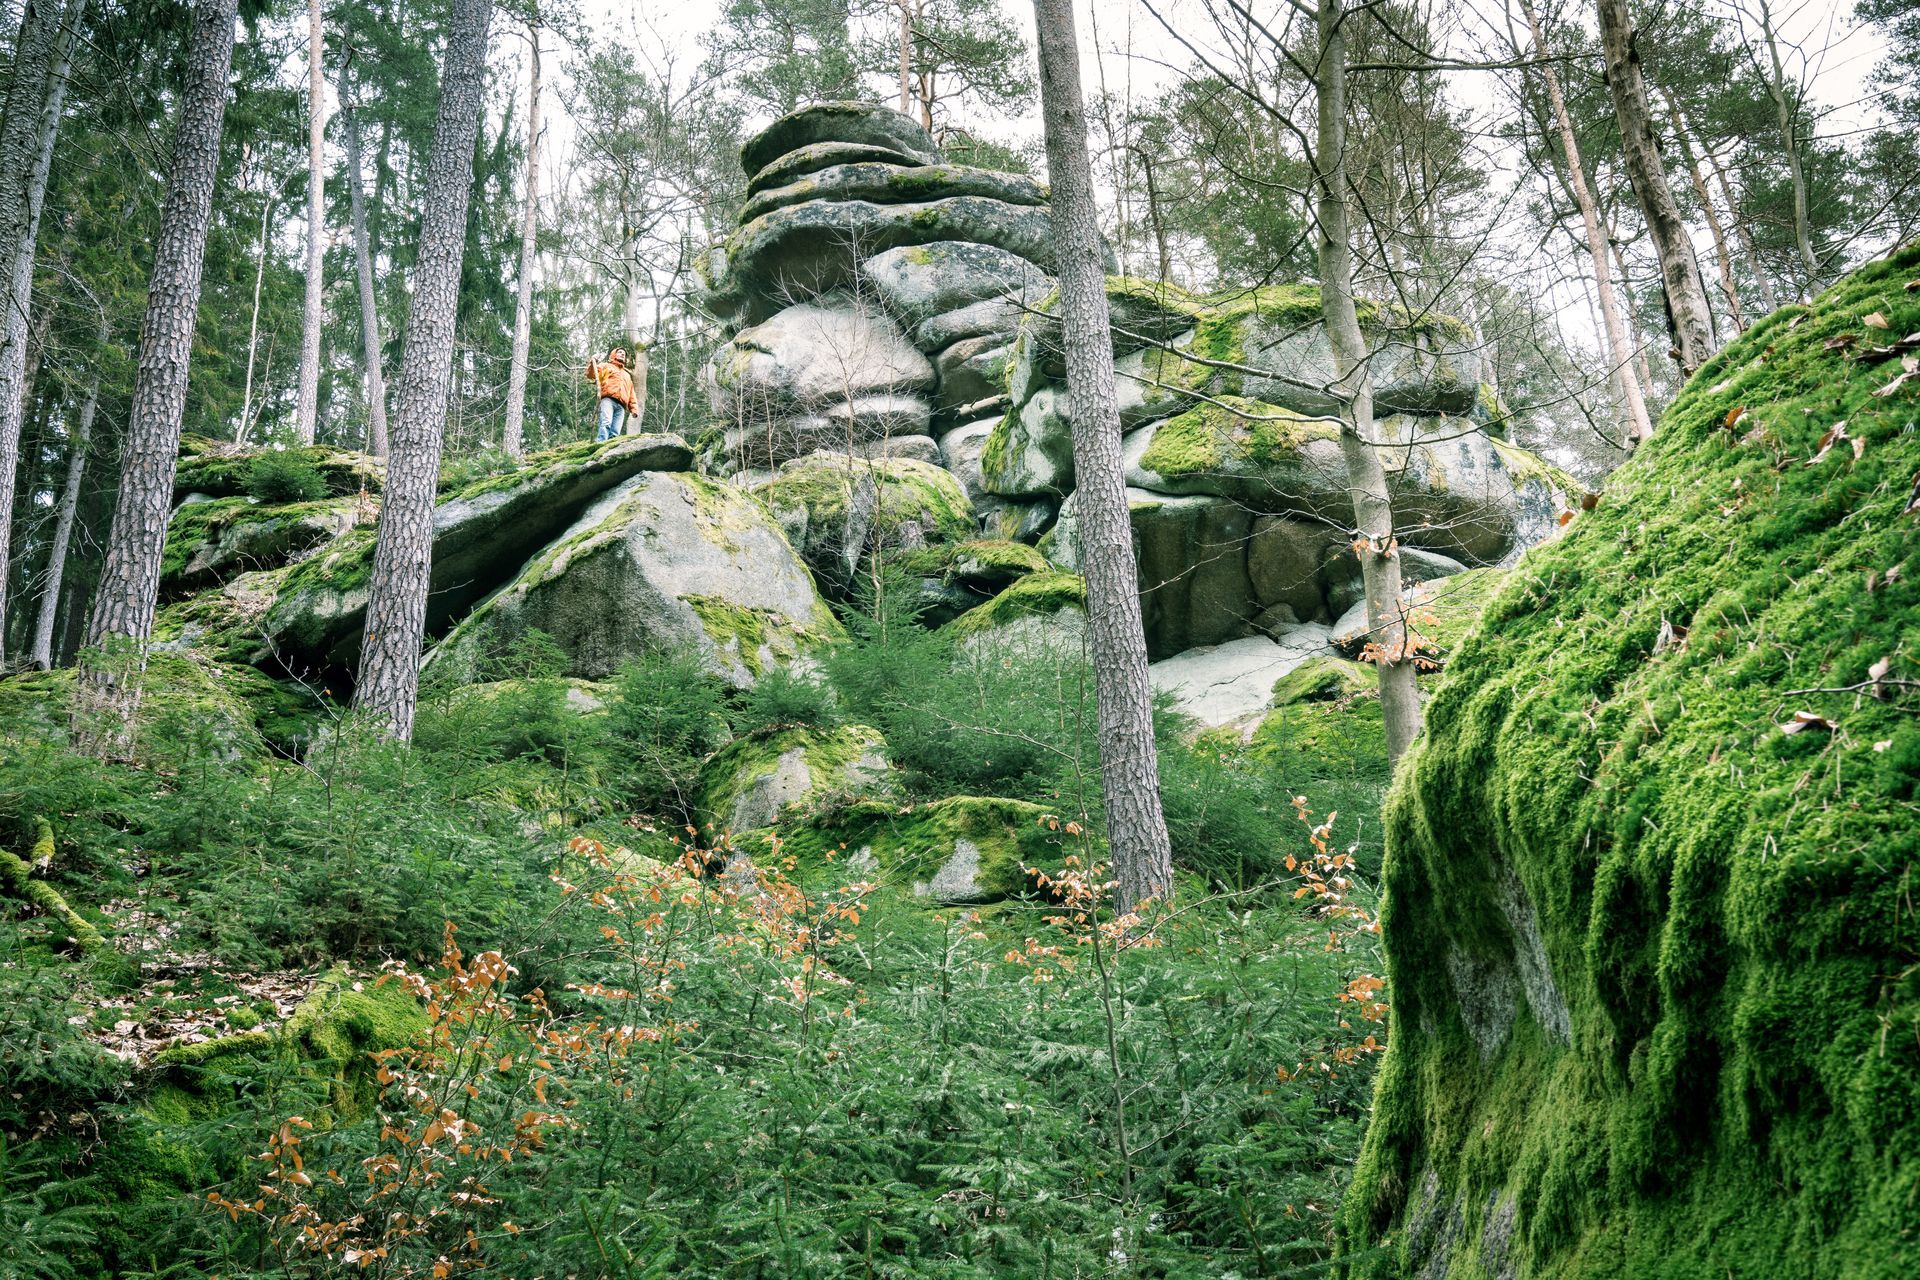 Waldhistorischer Lehrpfad im südlichen Steinwald zum Waldhaus, Saubadfelsen, Zipfeltannenfelsen bzw. Steinwald-Sphinx und Rotwildgehege zu Hirsch Max.